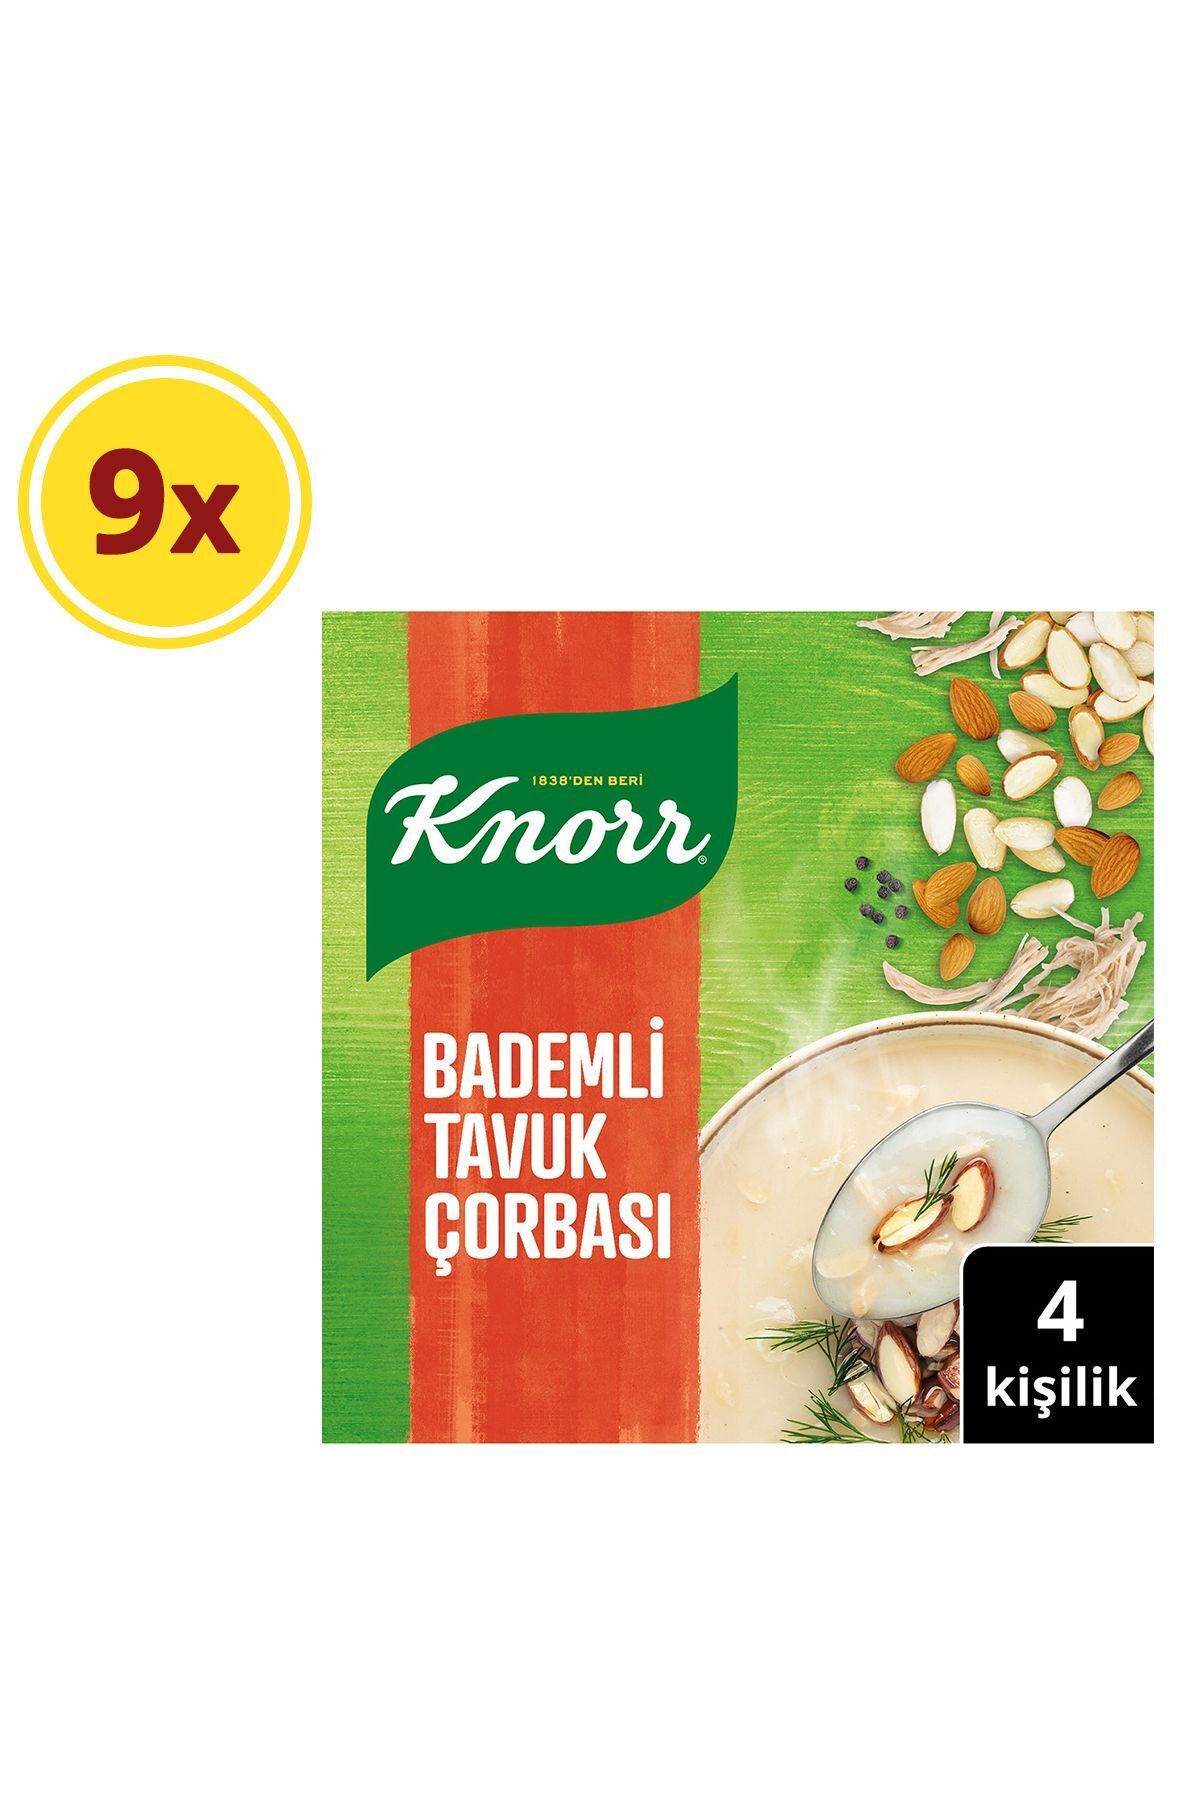 Knorr Bademli Tavuk Çorbası 75g X9 Adet